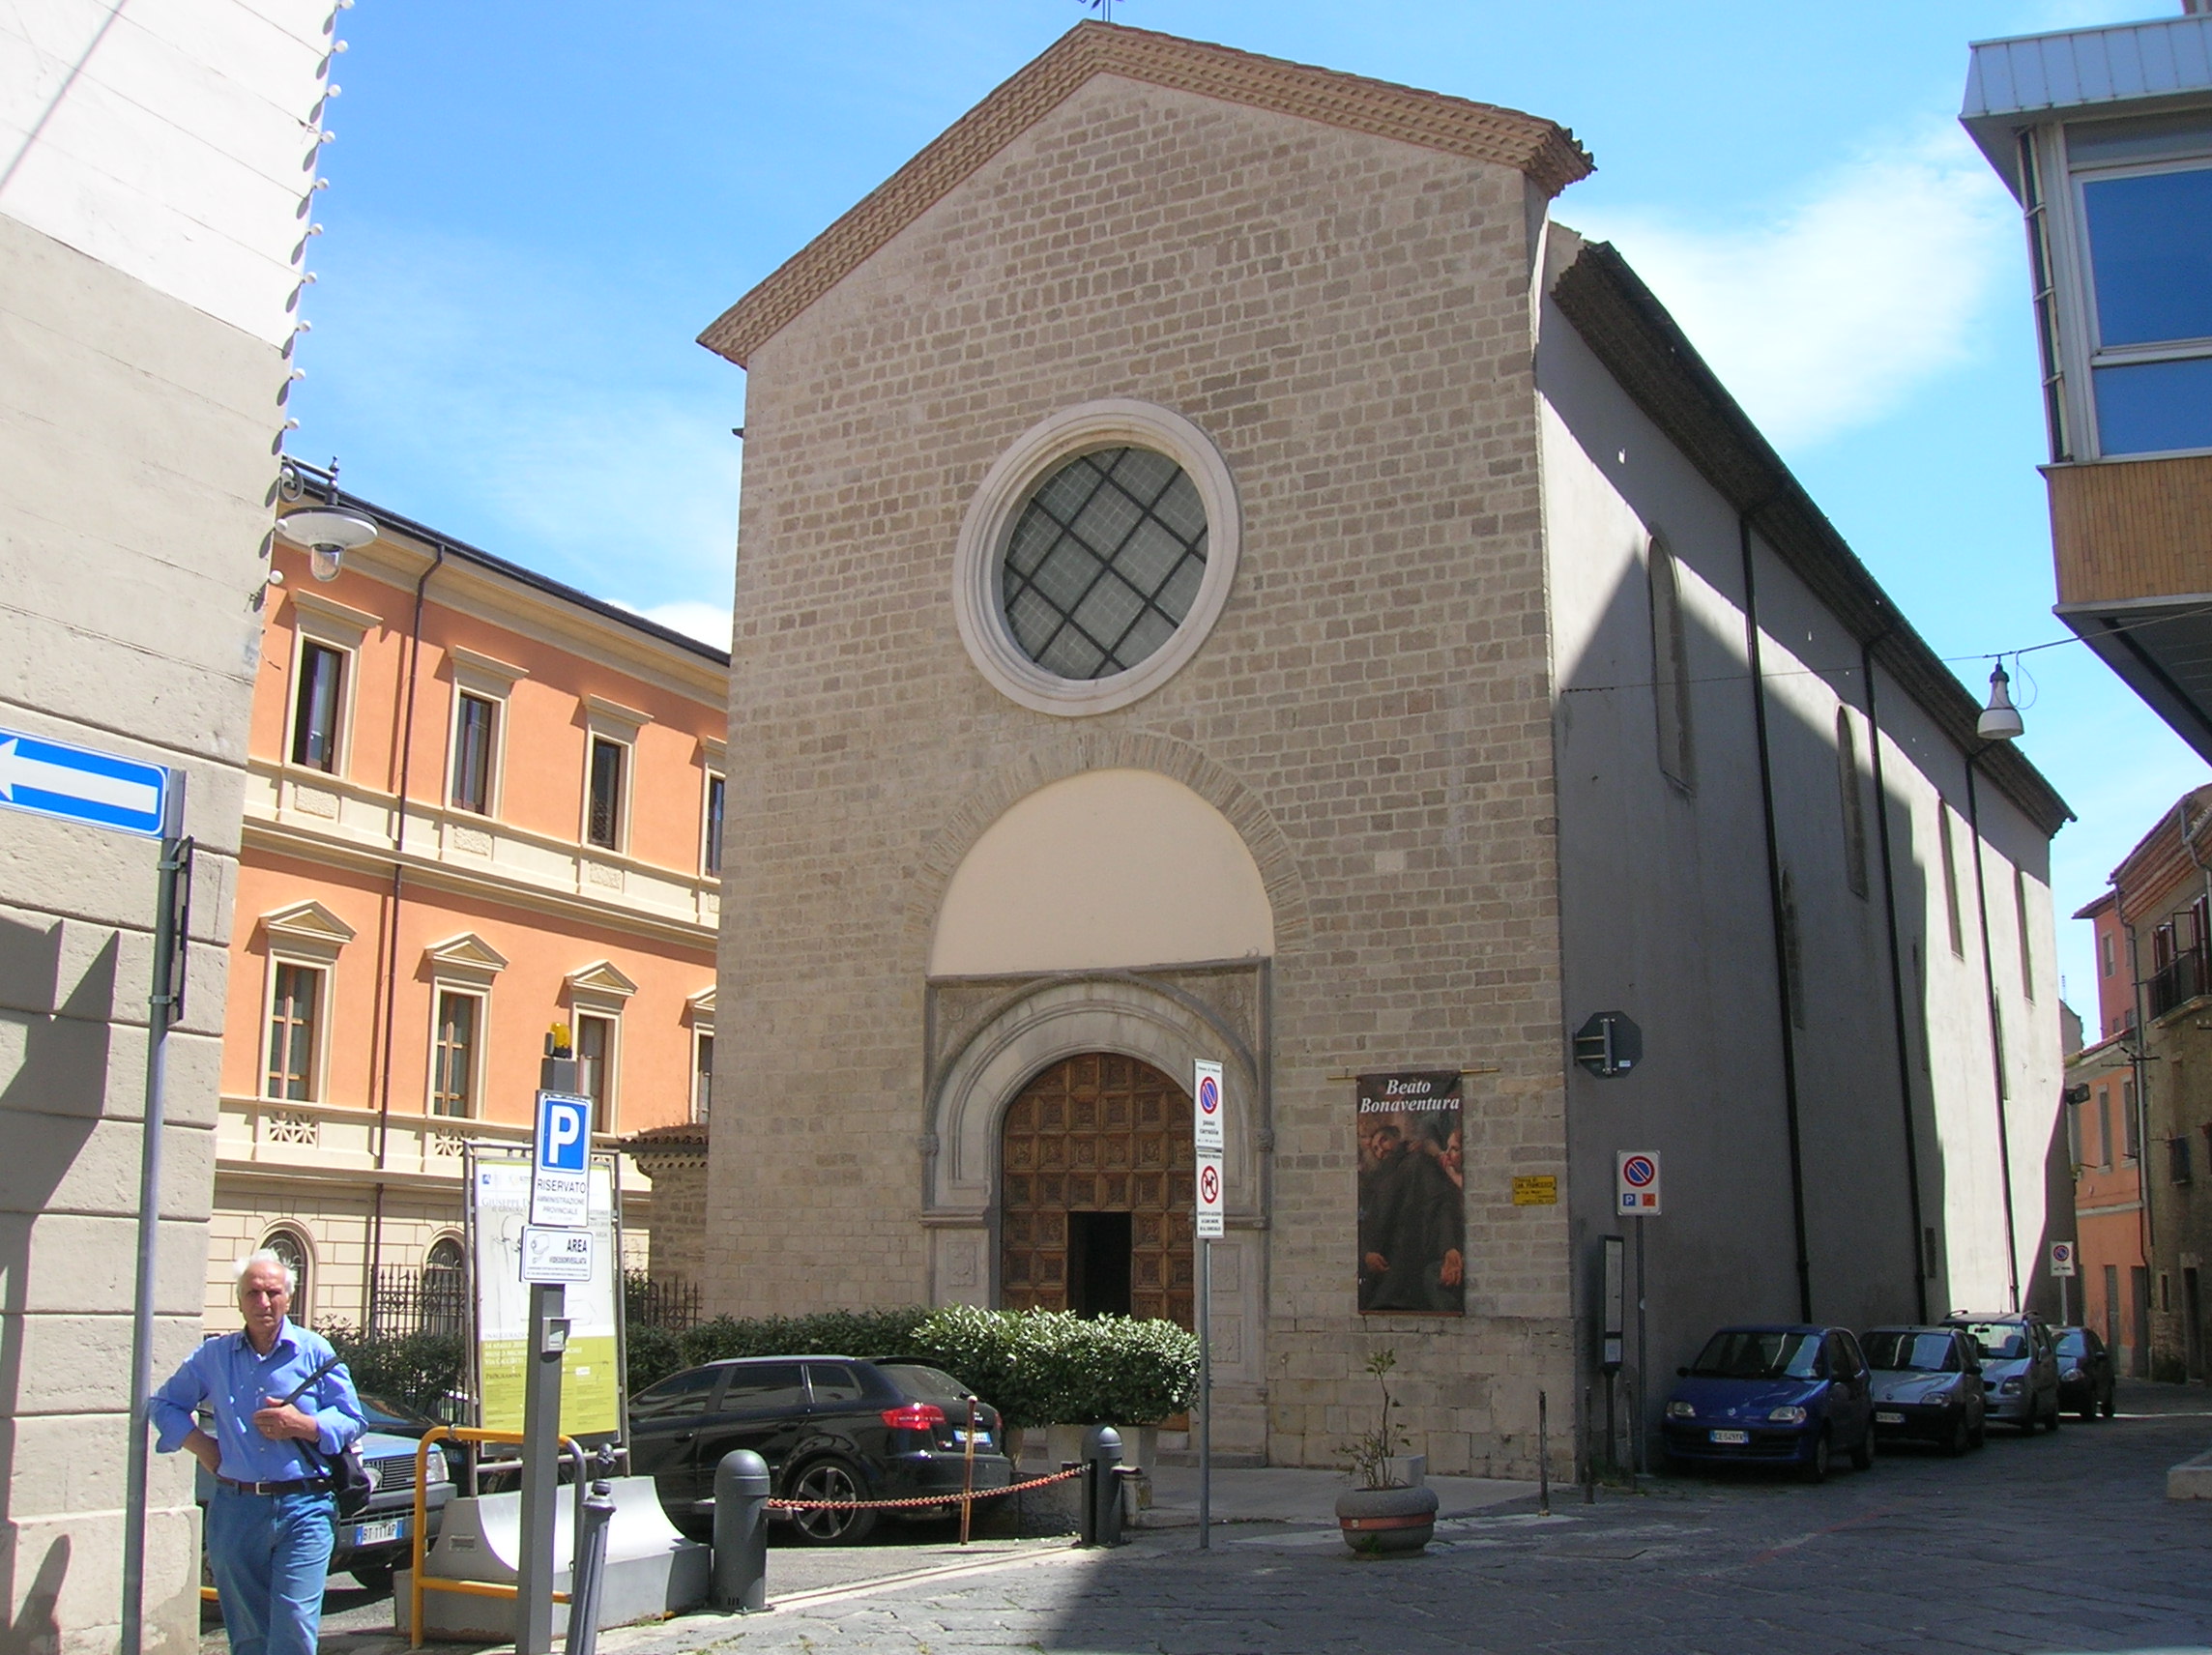 Mario sigismondo, Facciata della chiesa di San Francesco, 2012, fotografia digitale